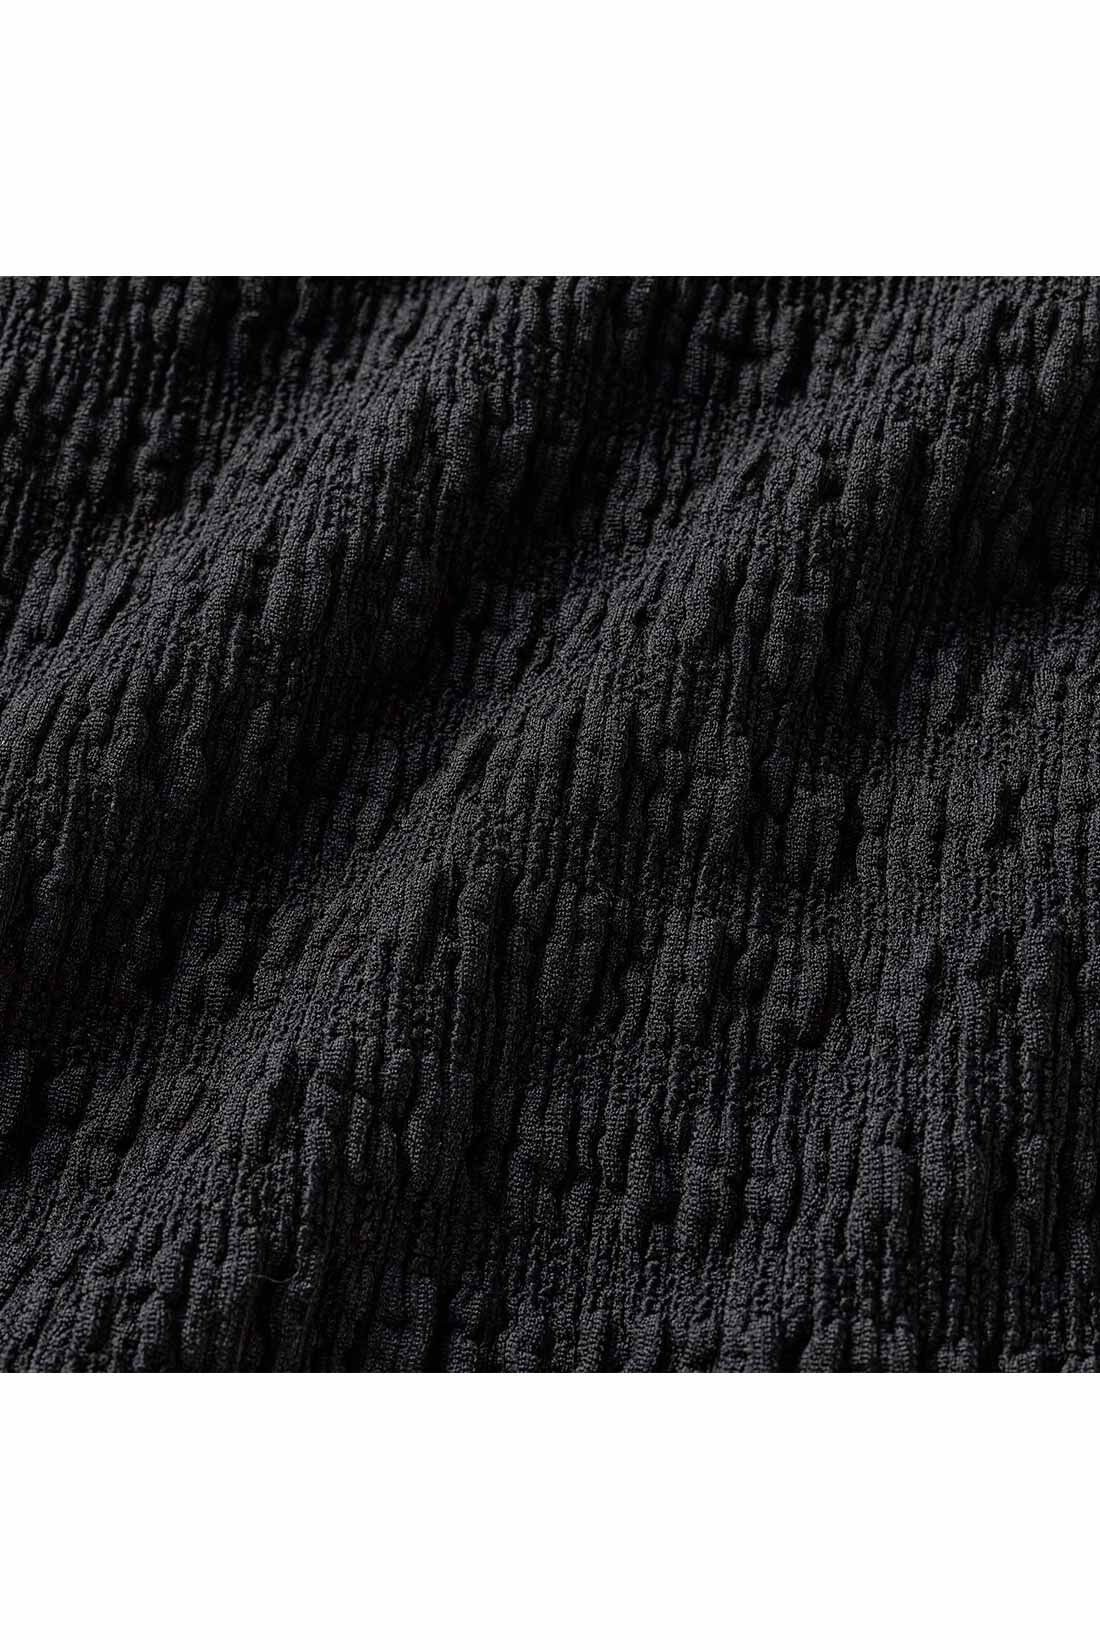 IEDIT[イディット]　ふくれジャカードカットソー素材のⅠラインスカート|立体的な表面感のあるふくれジャカードカットソーは、伸びやかで着心地快適。